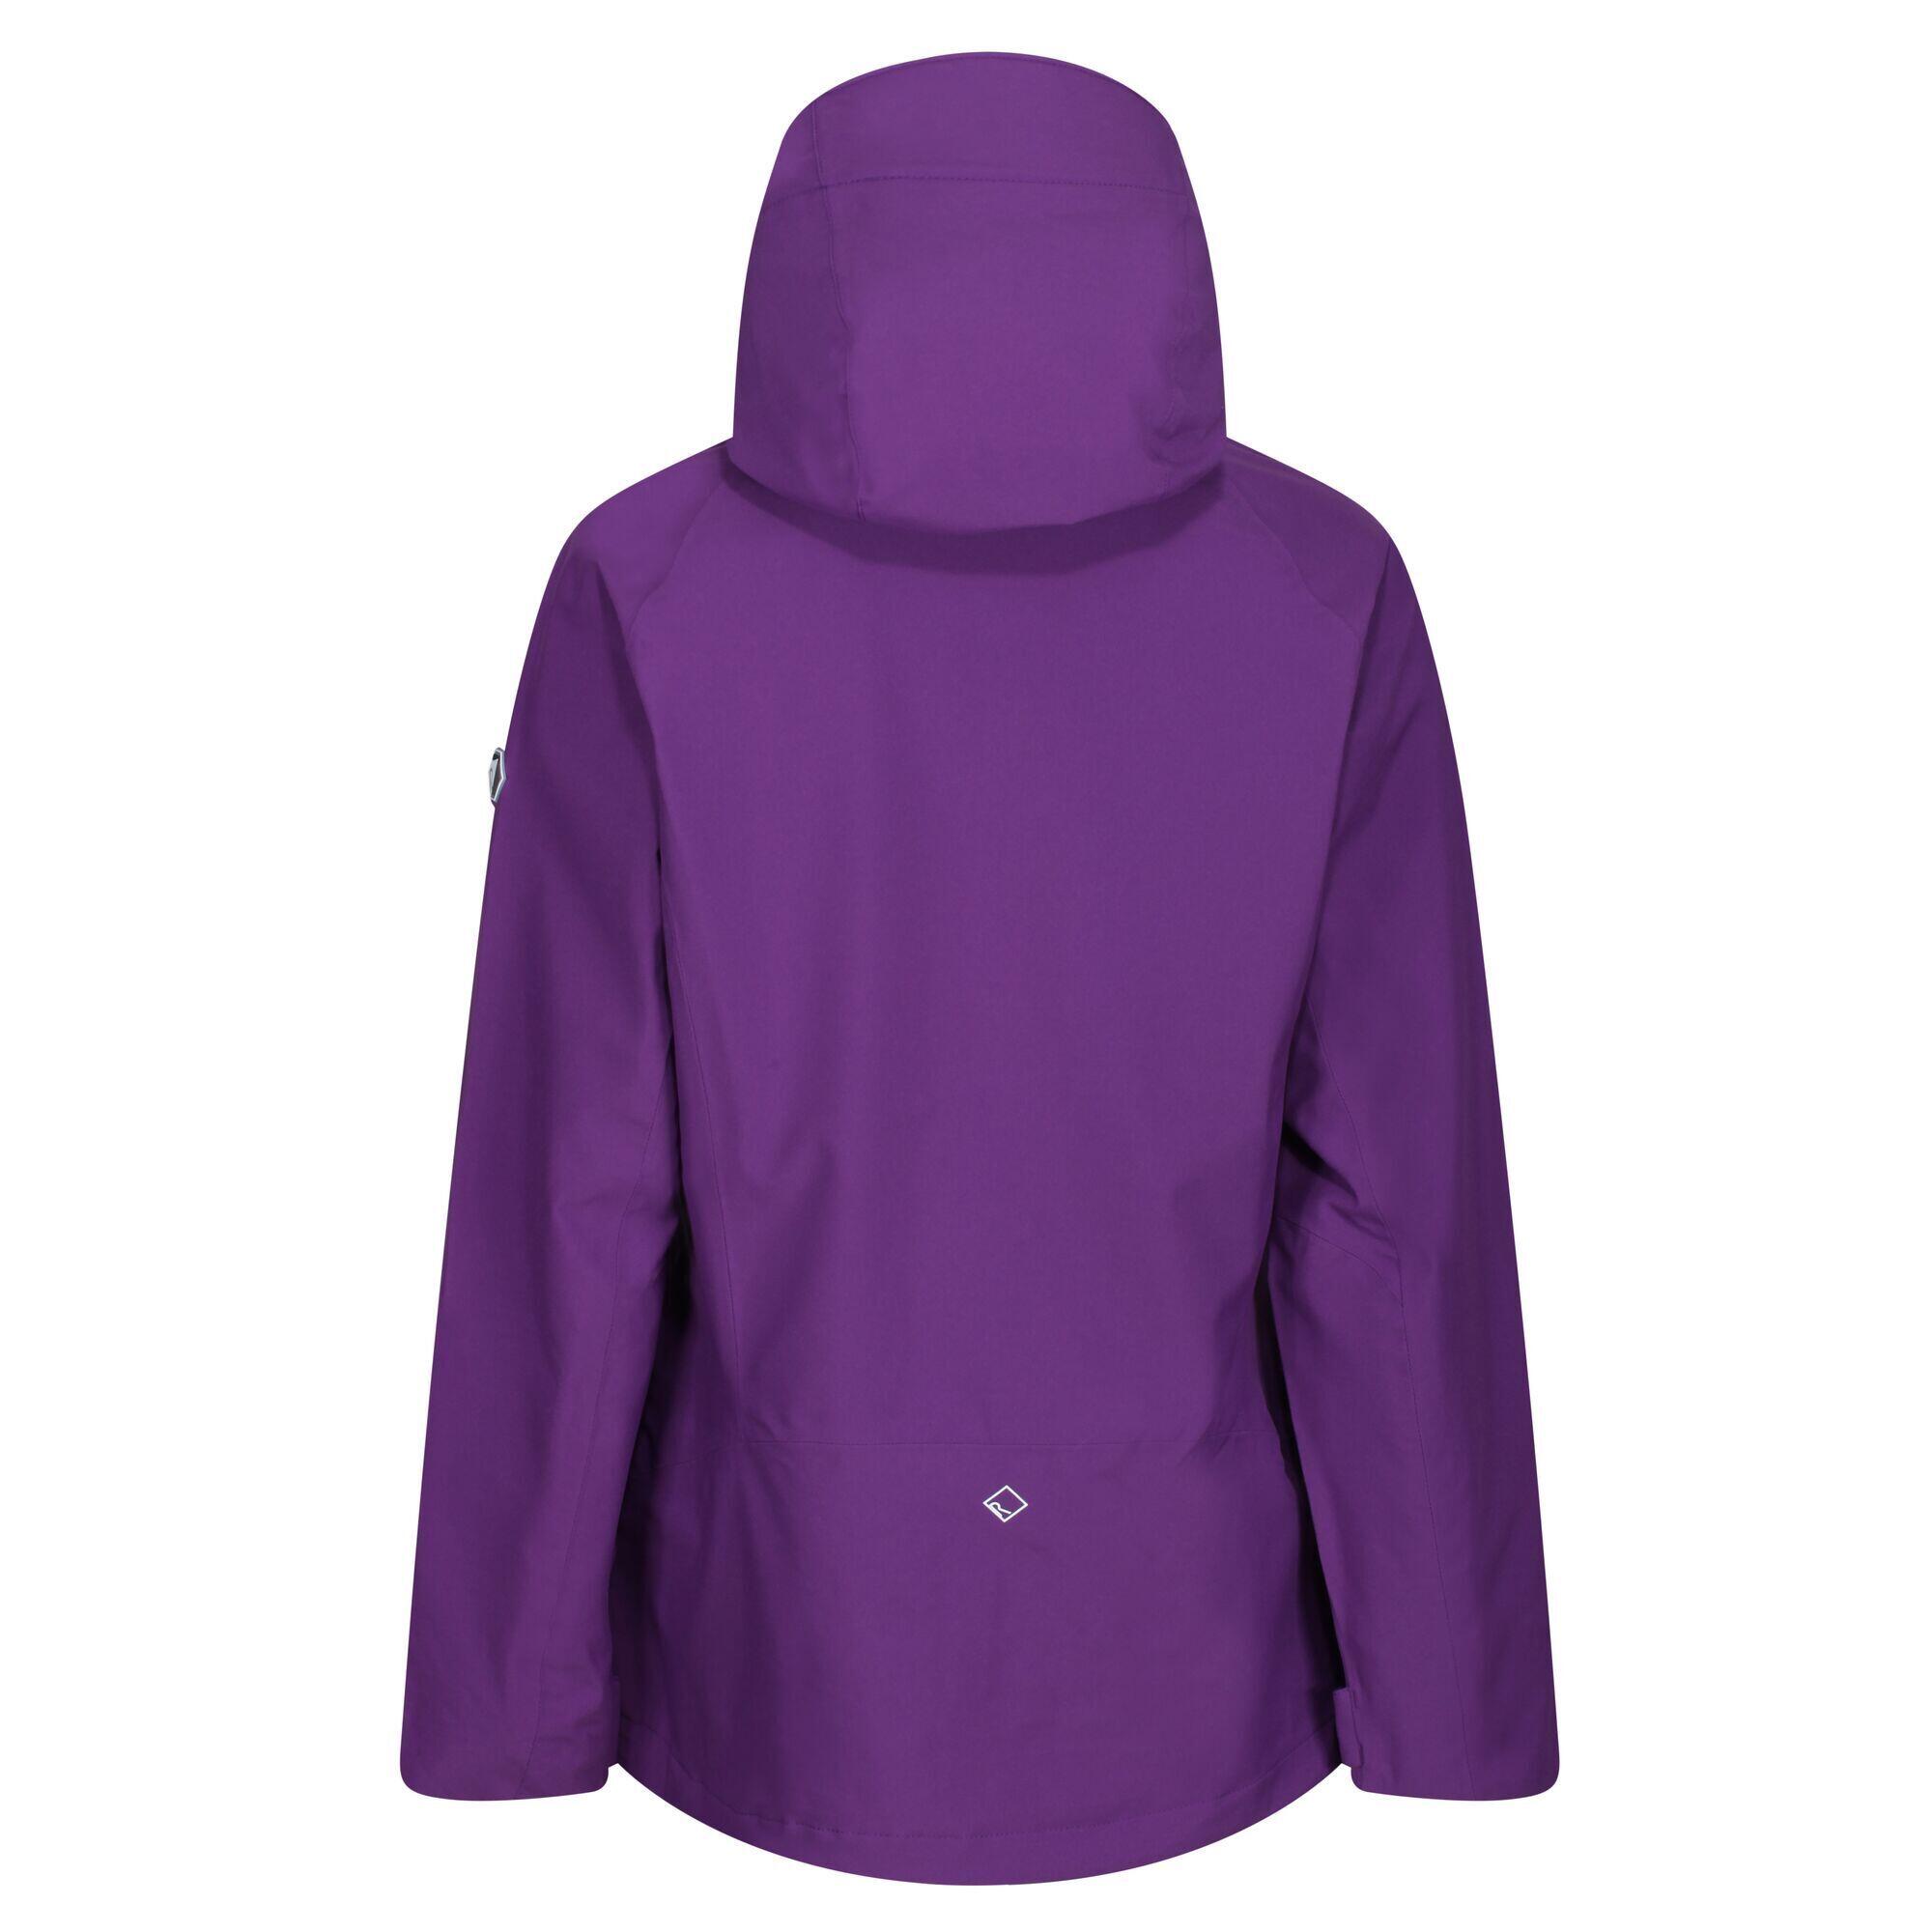 Womens/Ladies Birchdale Waterproof Shell Jacket (Plum) 2/5